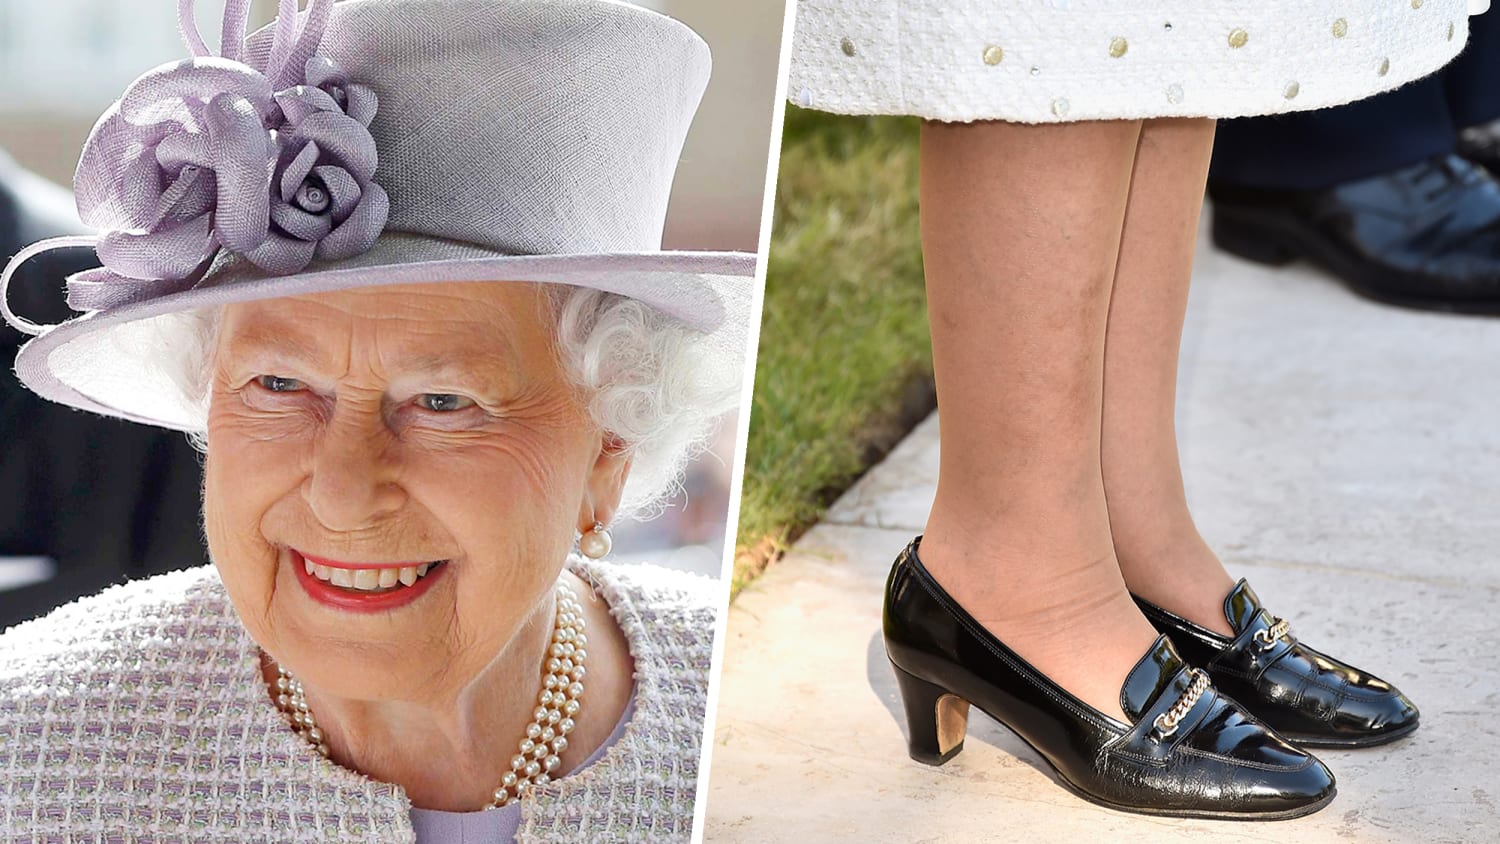 ÙØªÙØ¬Ø© Ø¨Ø­Ø« Ø§ÙØµÙØ± Ø¹Ù âªShoes + Queen Elizabethâ¬â